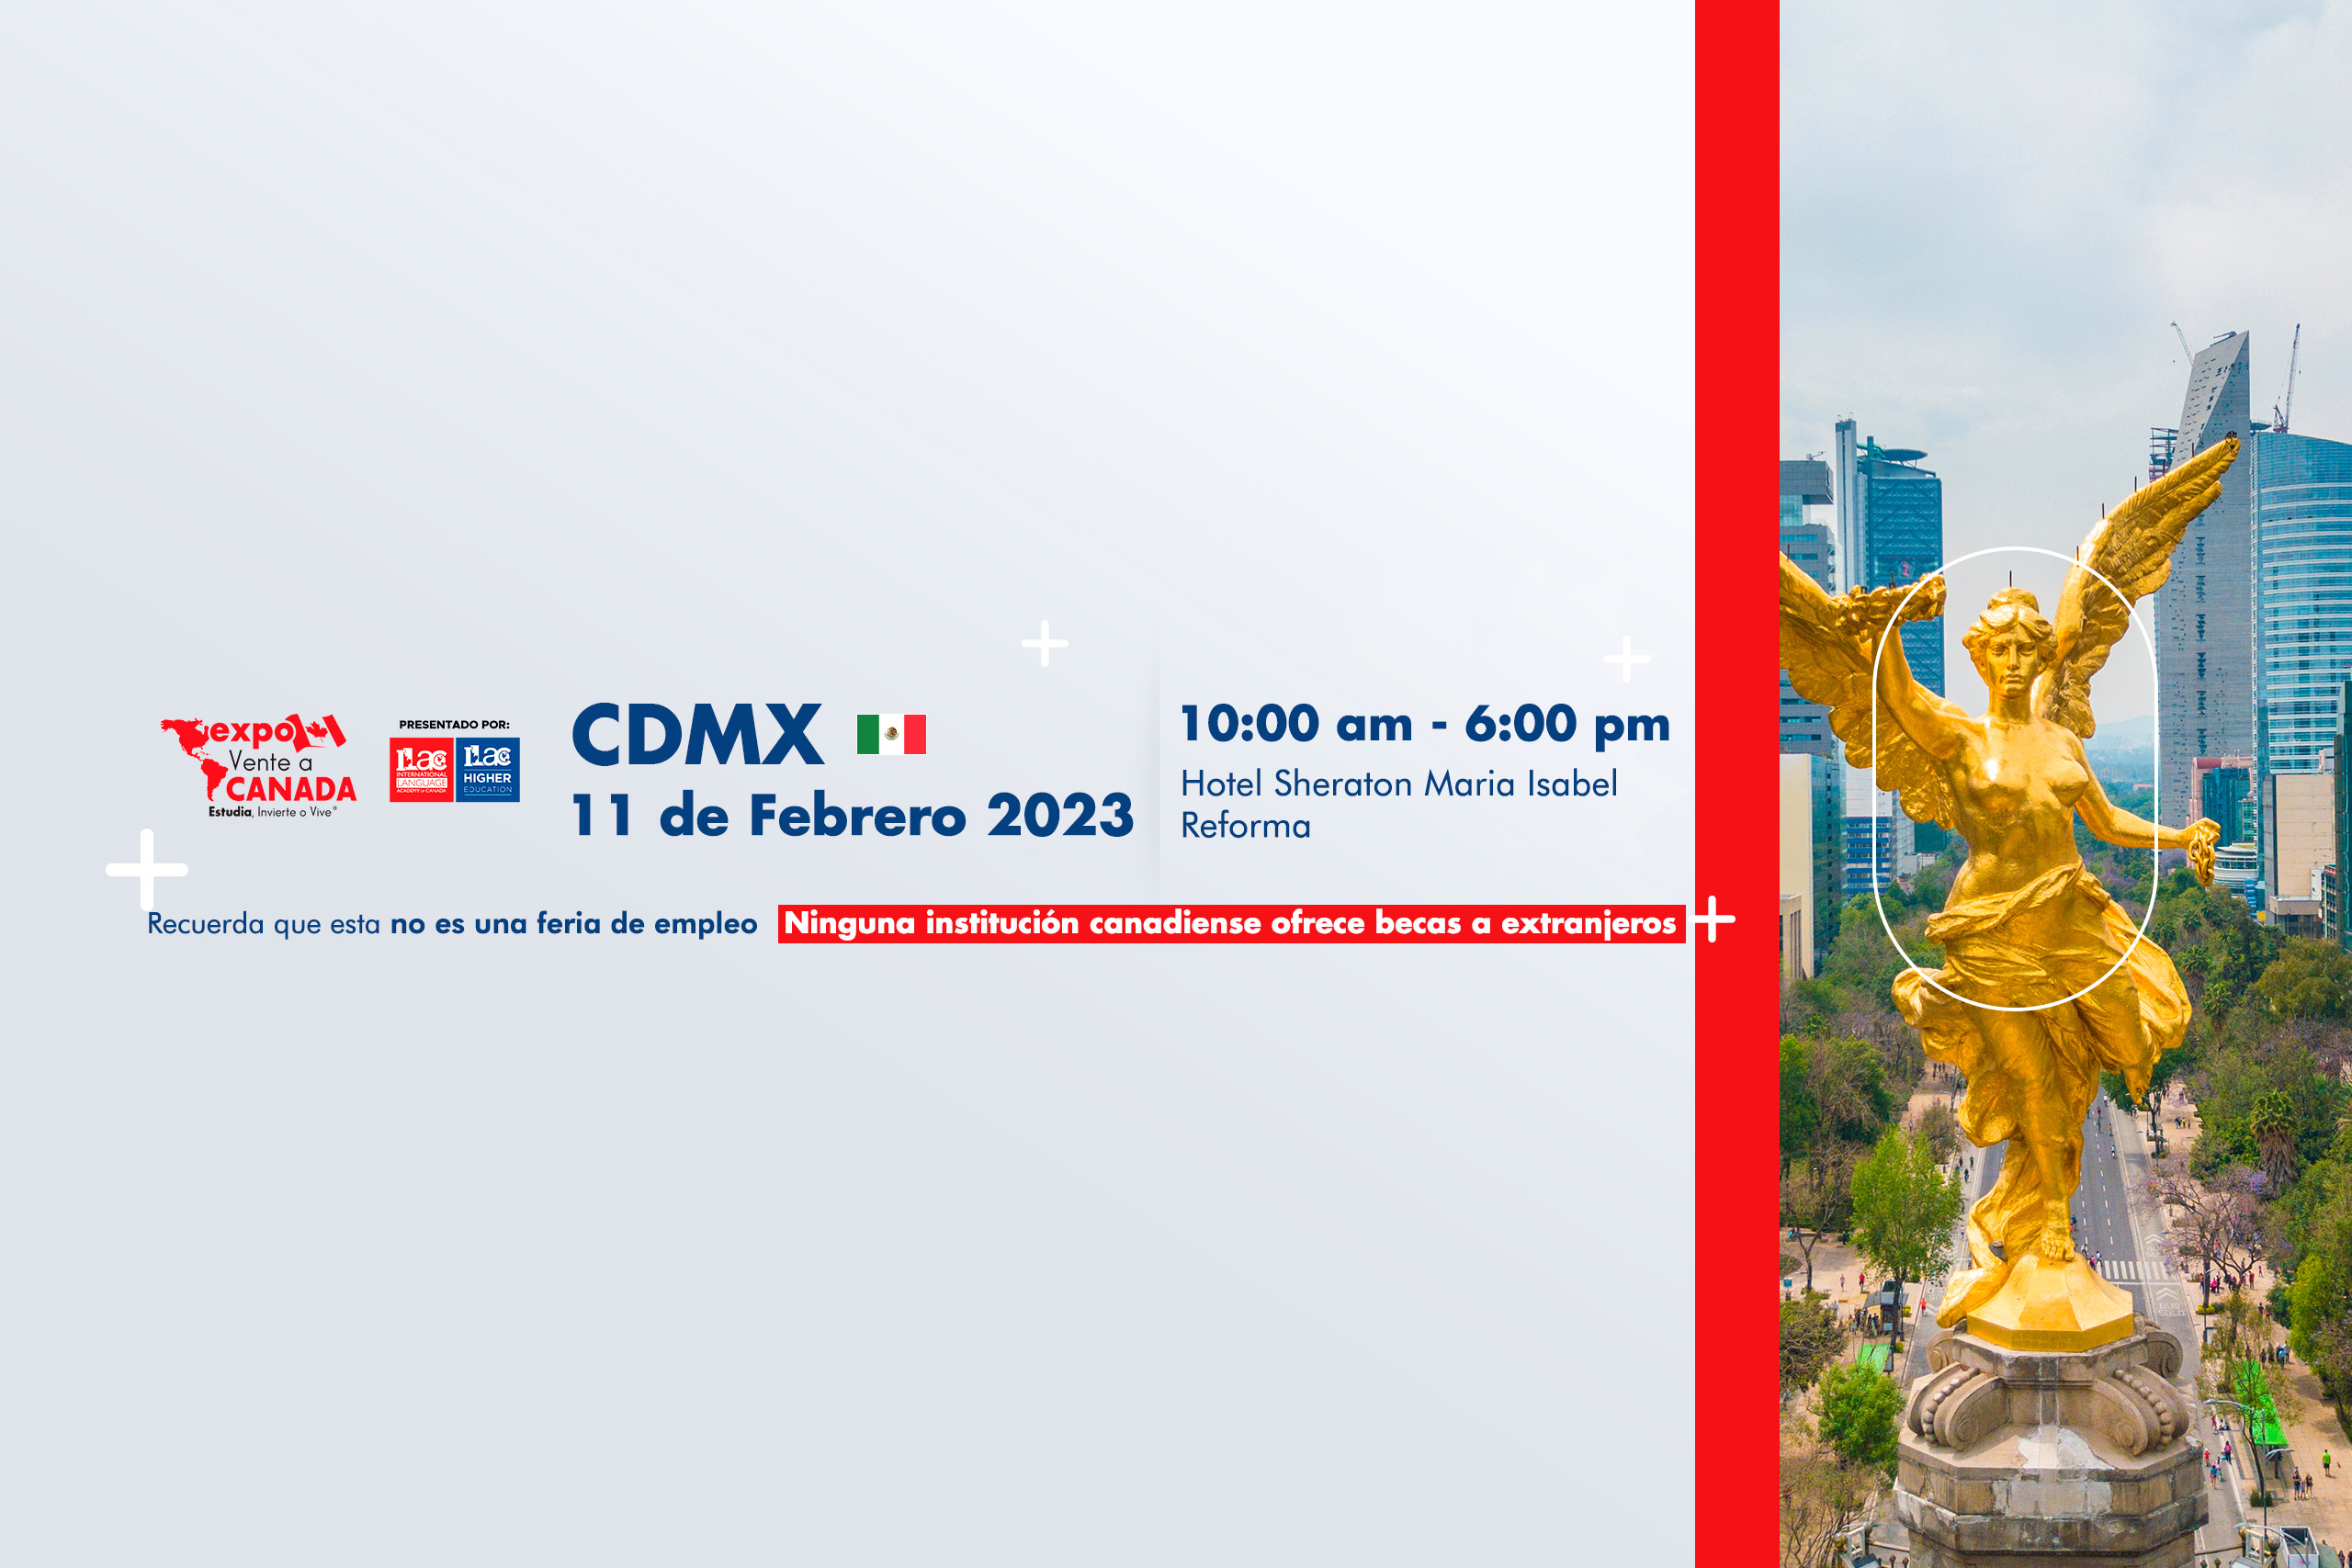 EXPO CDMX Vente a Canada